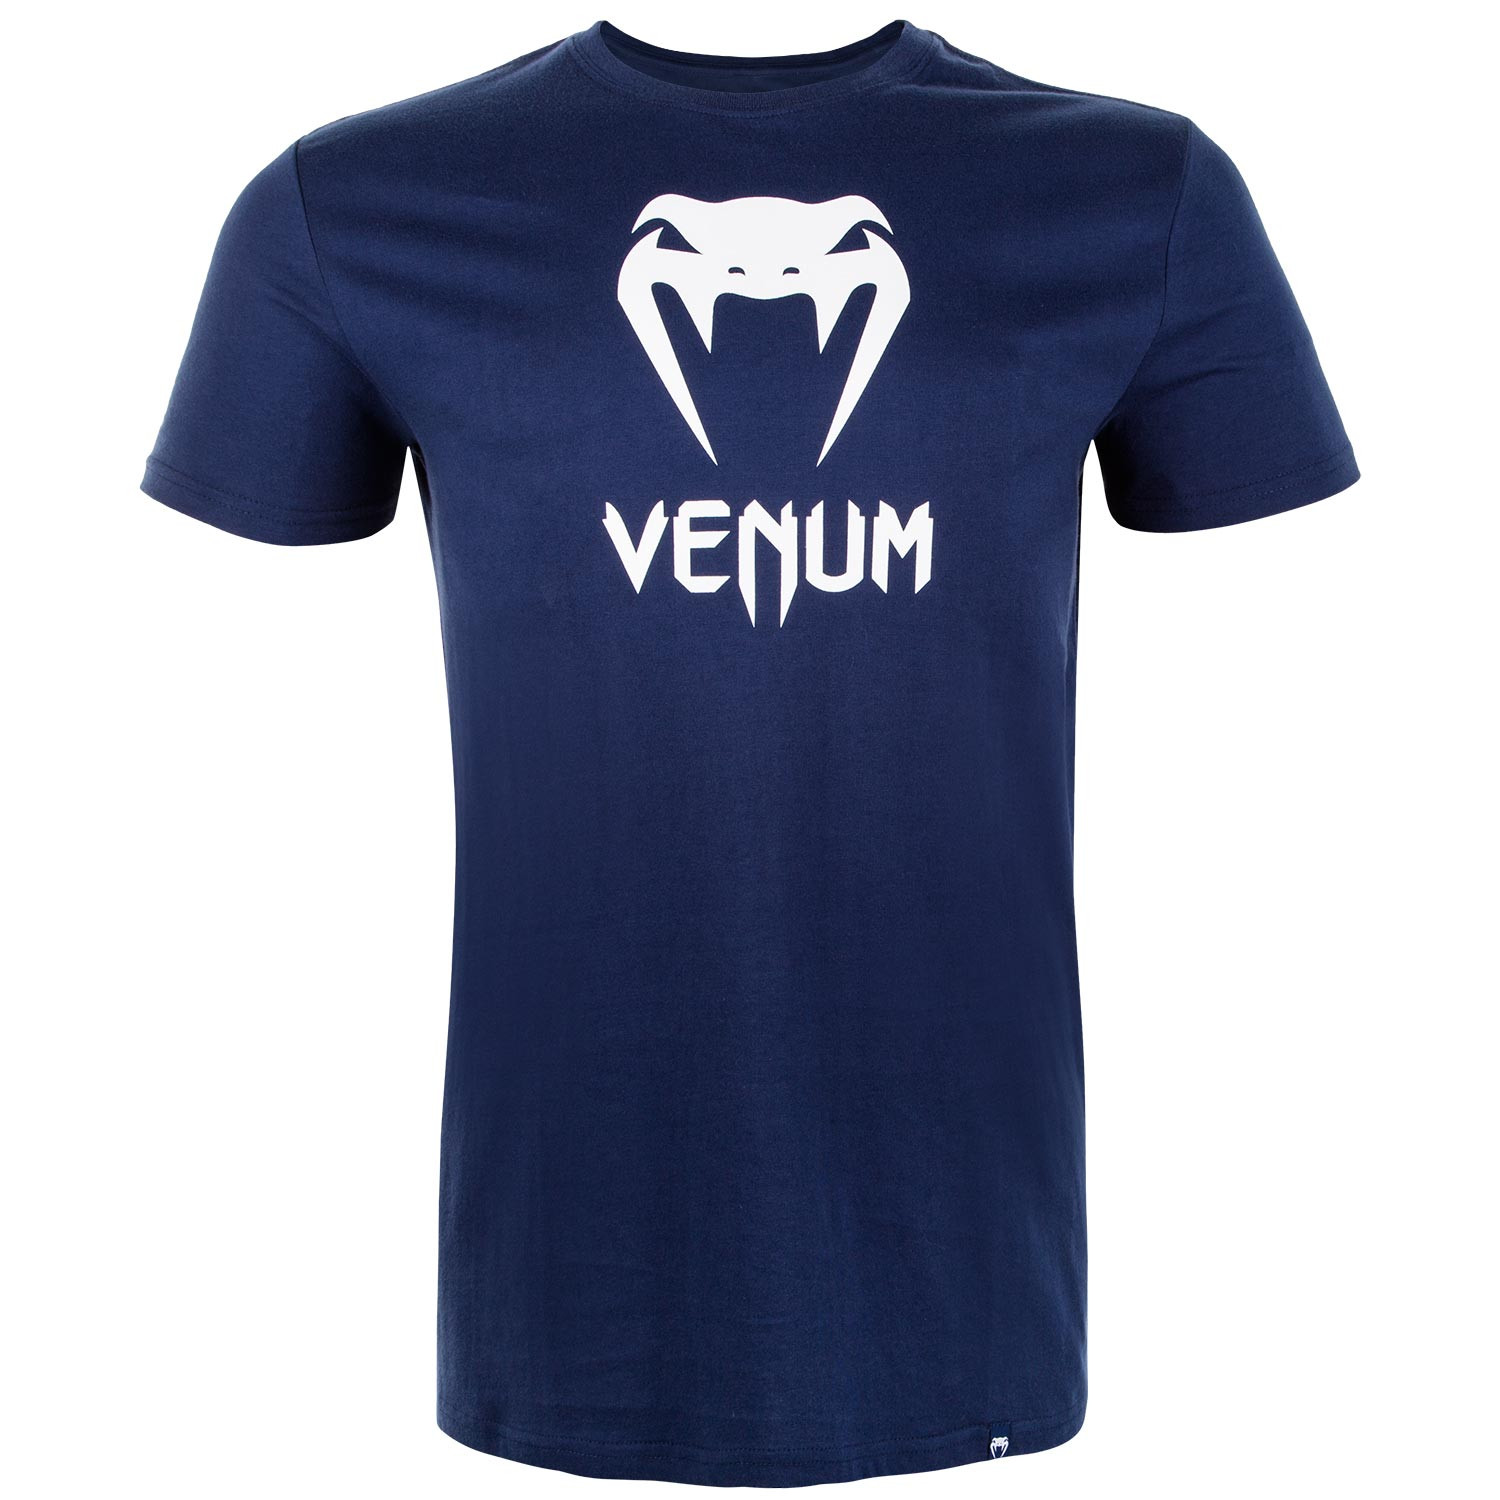 T-shirt Venum classic Bleu